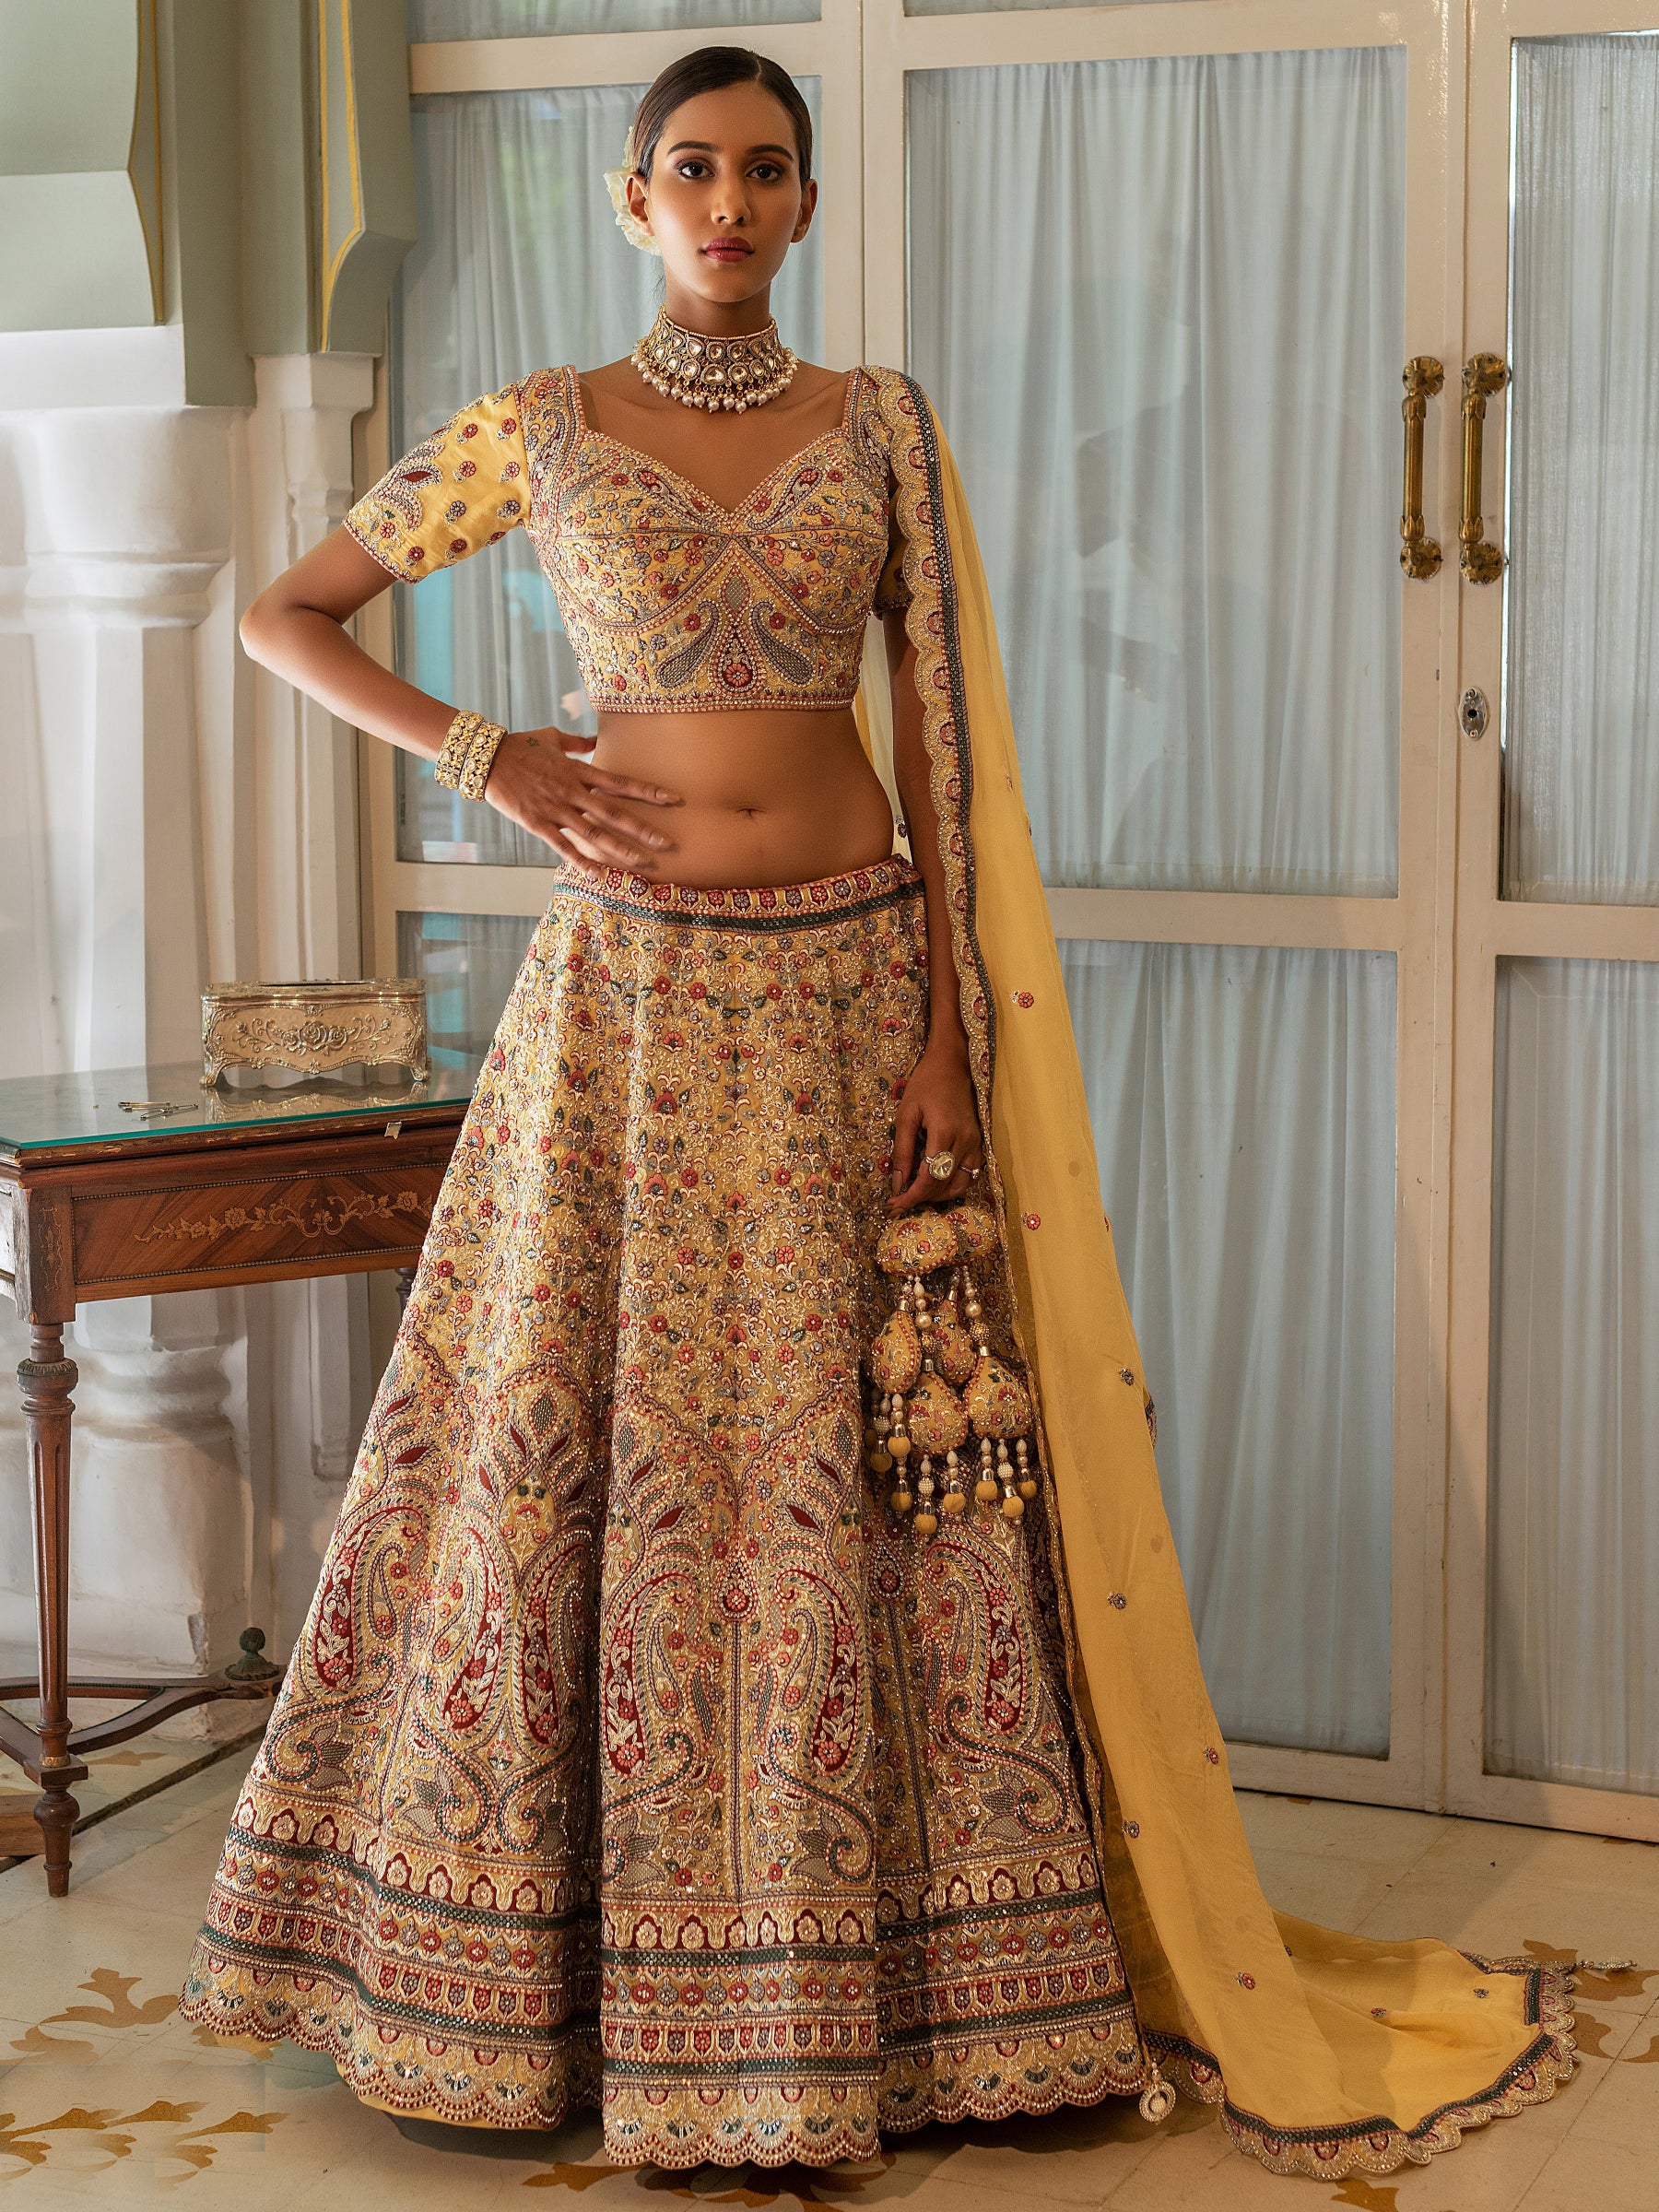 सारा अली खान ने कैरी किया फ्लोरल एंब्रॉयडरी वाला लहंगा, जानिए इसकी कीमत |  Sara Ali Khan carried a lehenga with floral embroidery know its price how |  TV9 Bharatvarsh